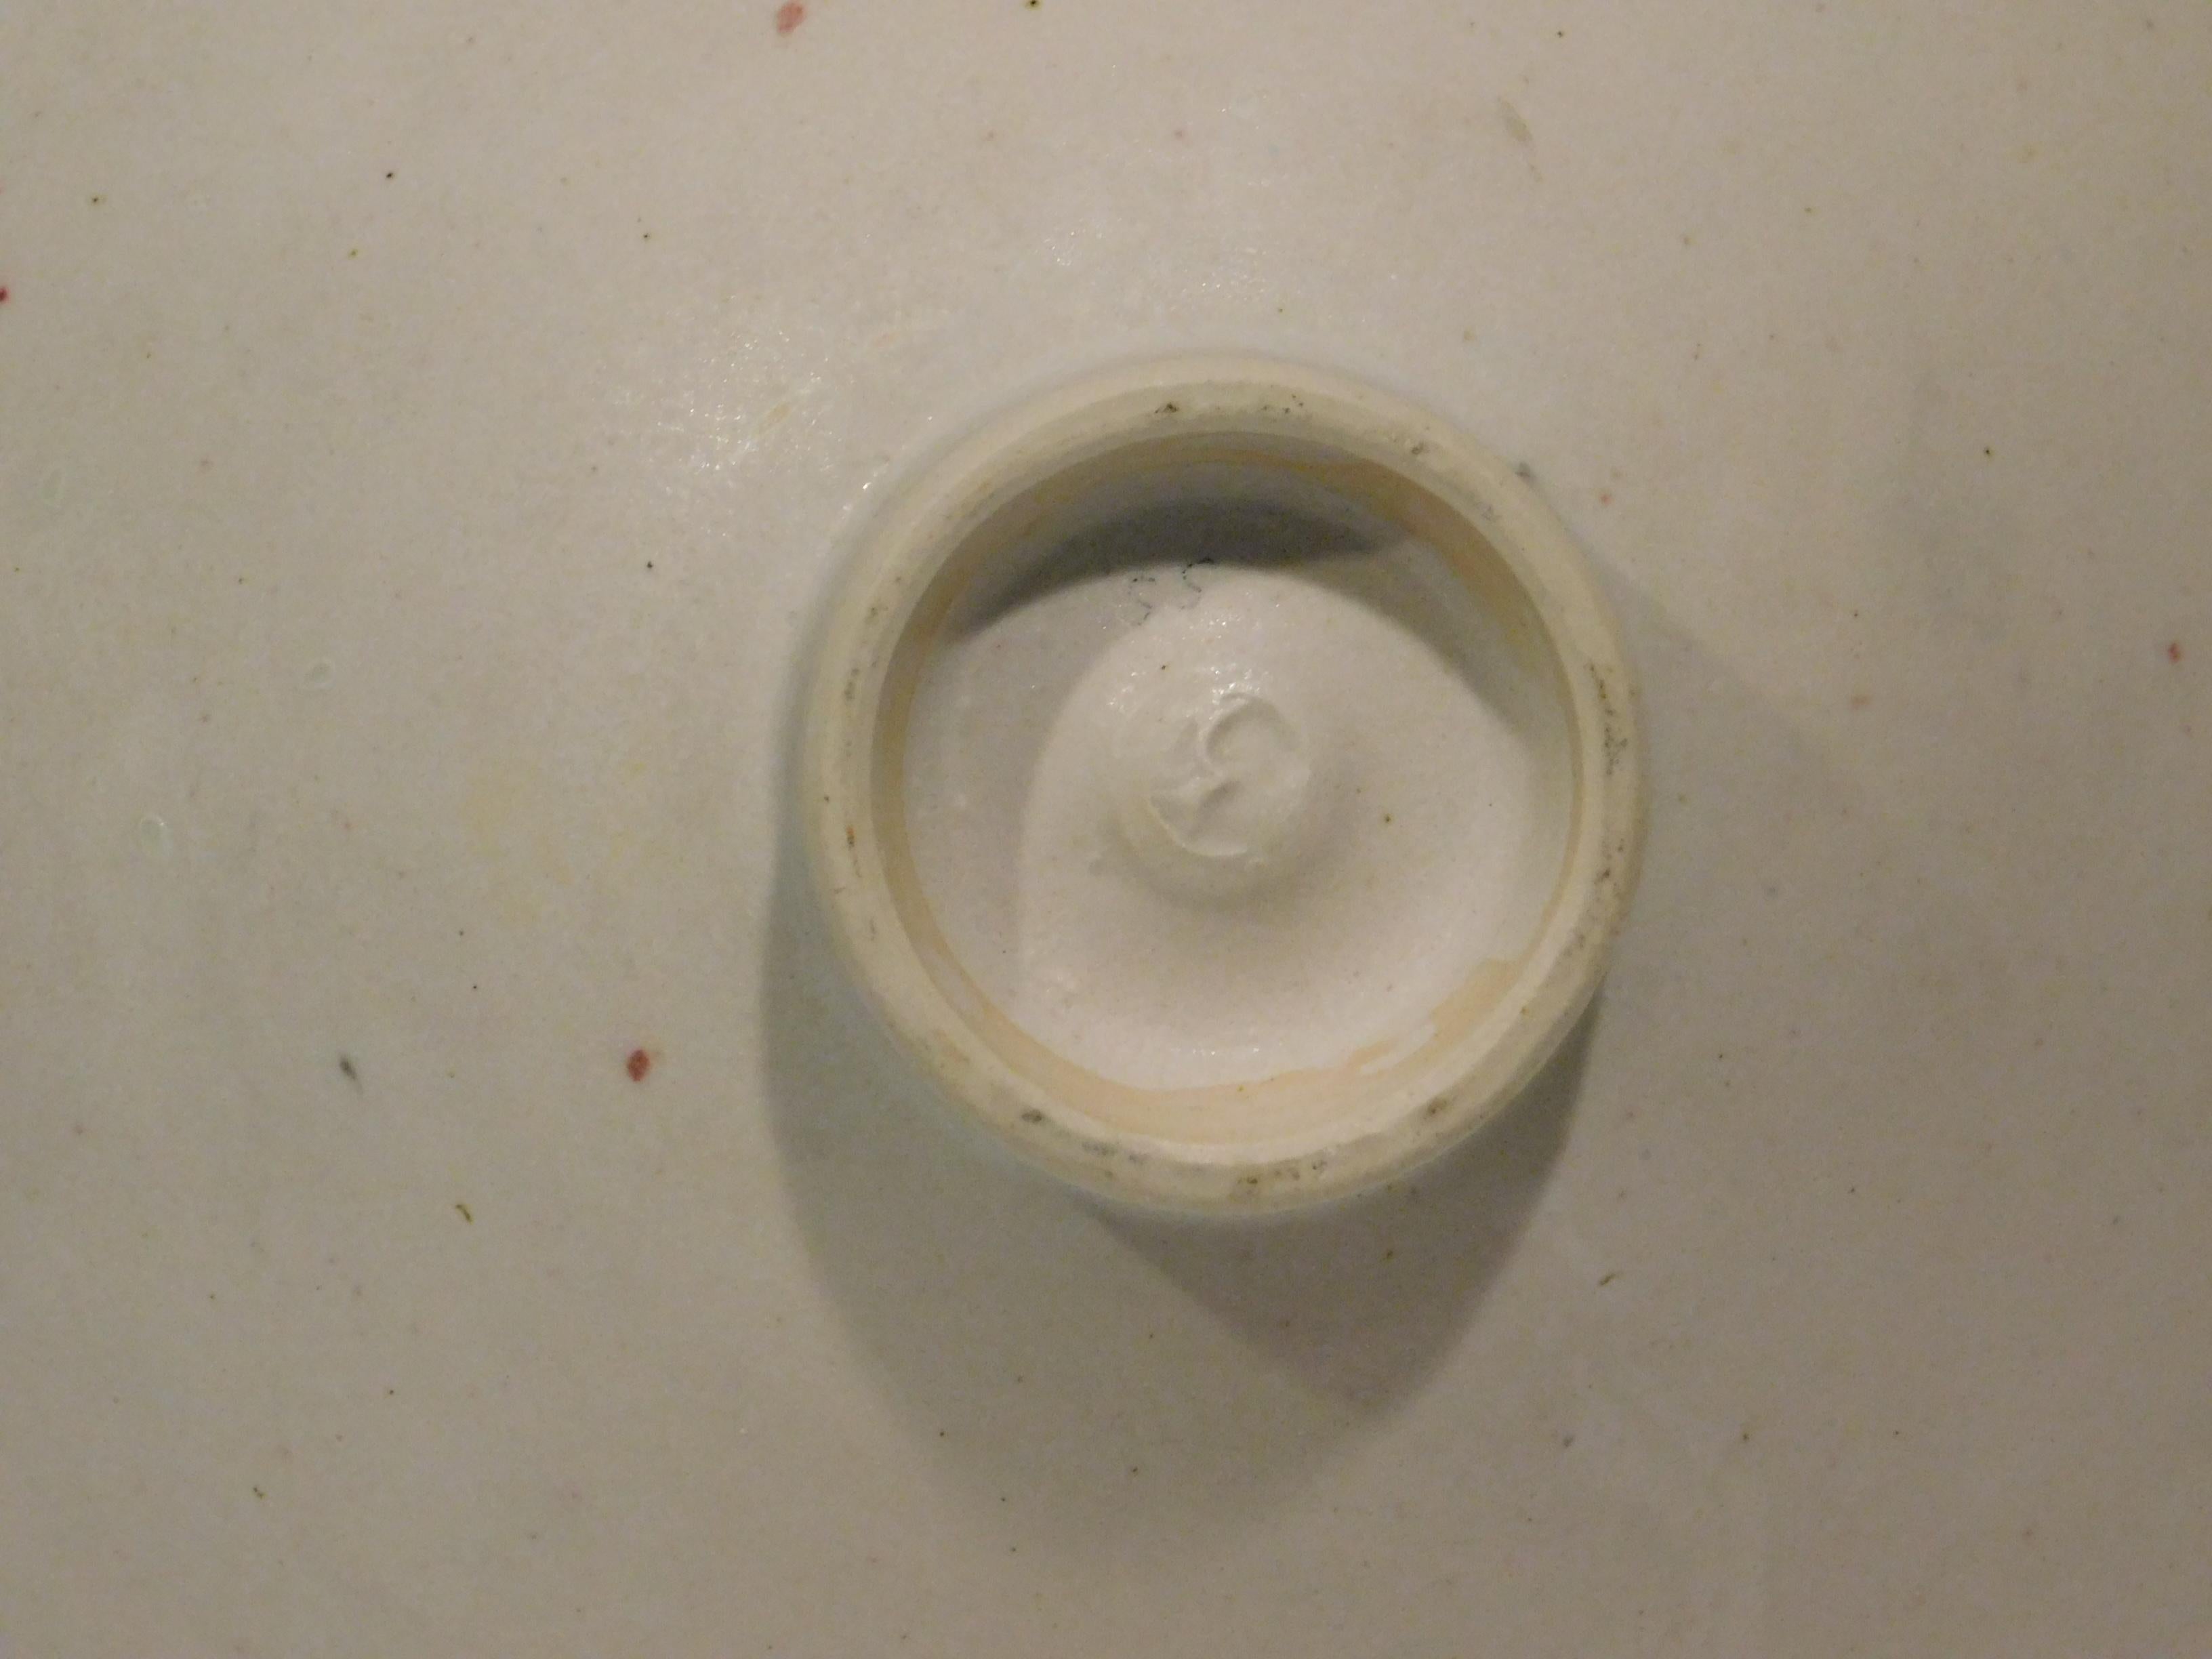  Emmanuel Cooper Important British Ceramist Flared Footed Studio Bowl For Sale 1